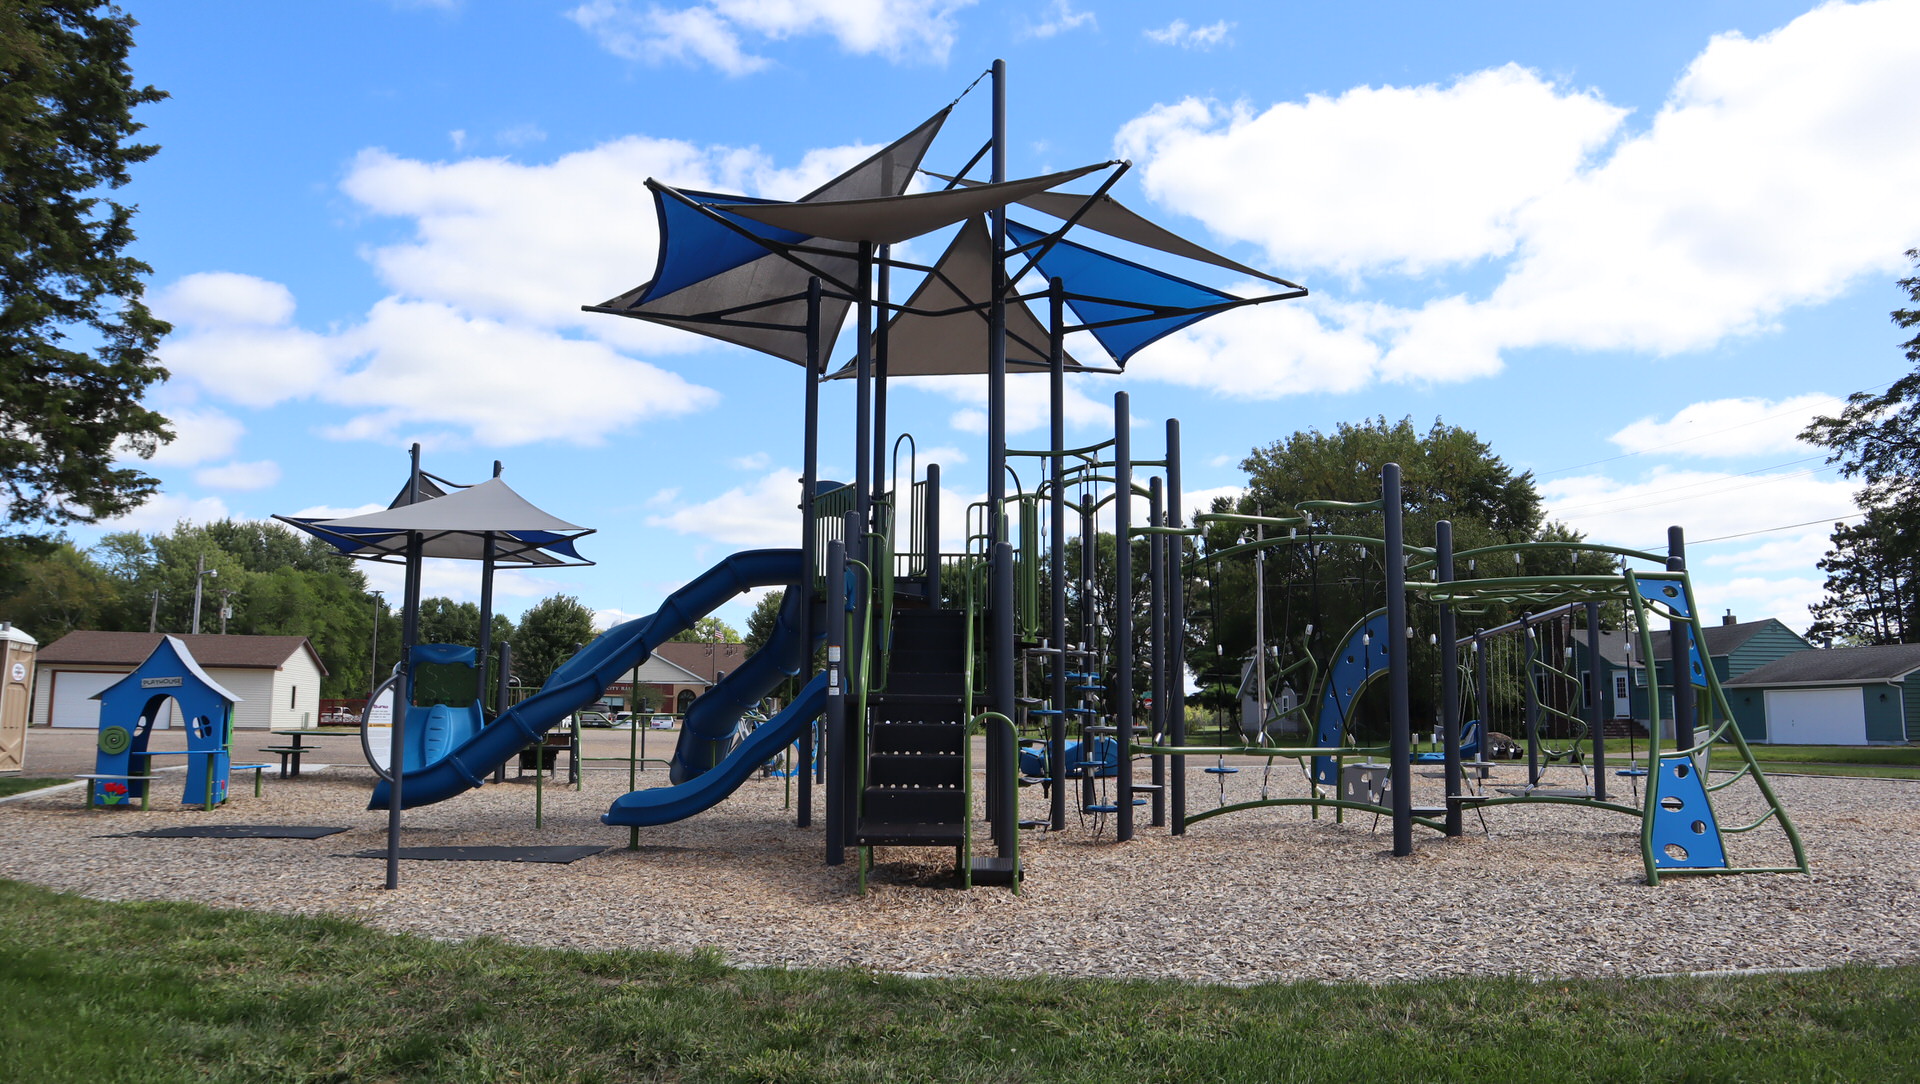 Lions Park Playground - Hugo, MN